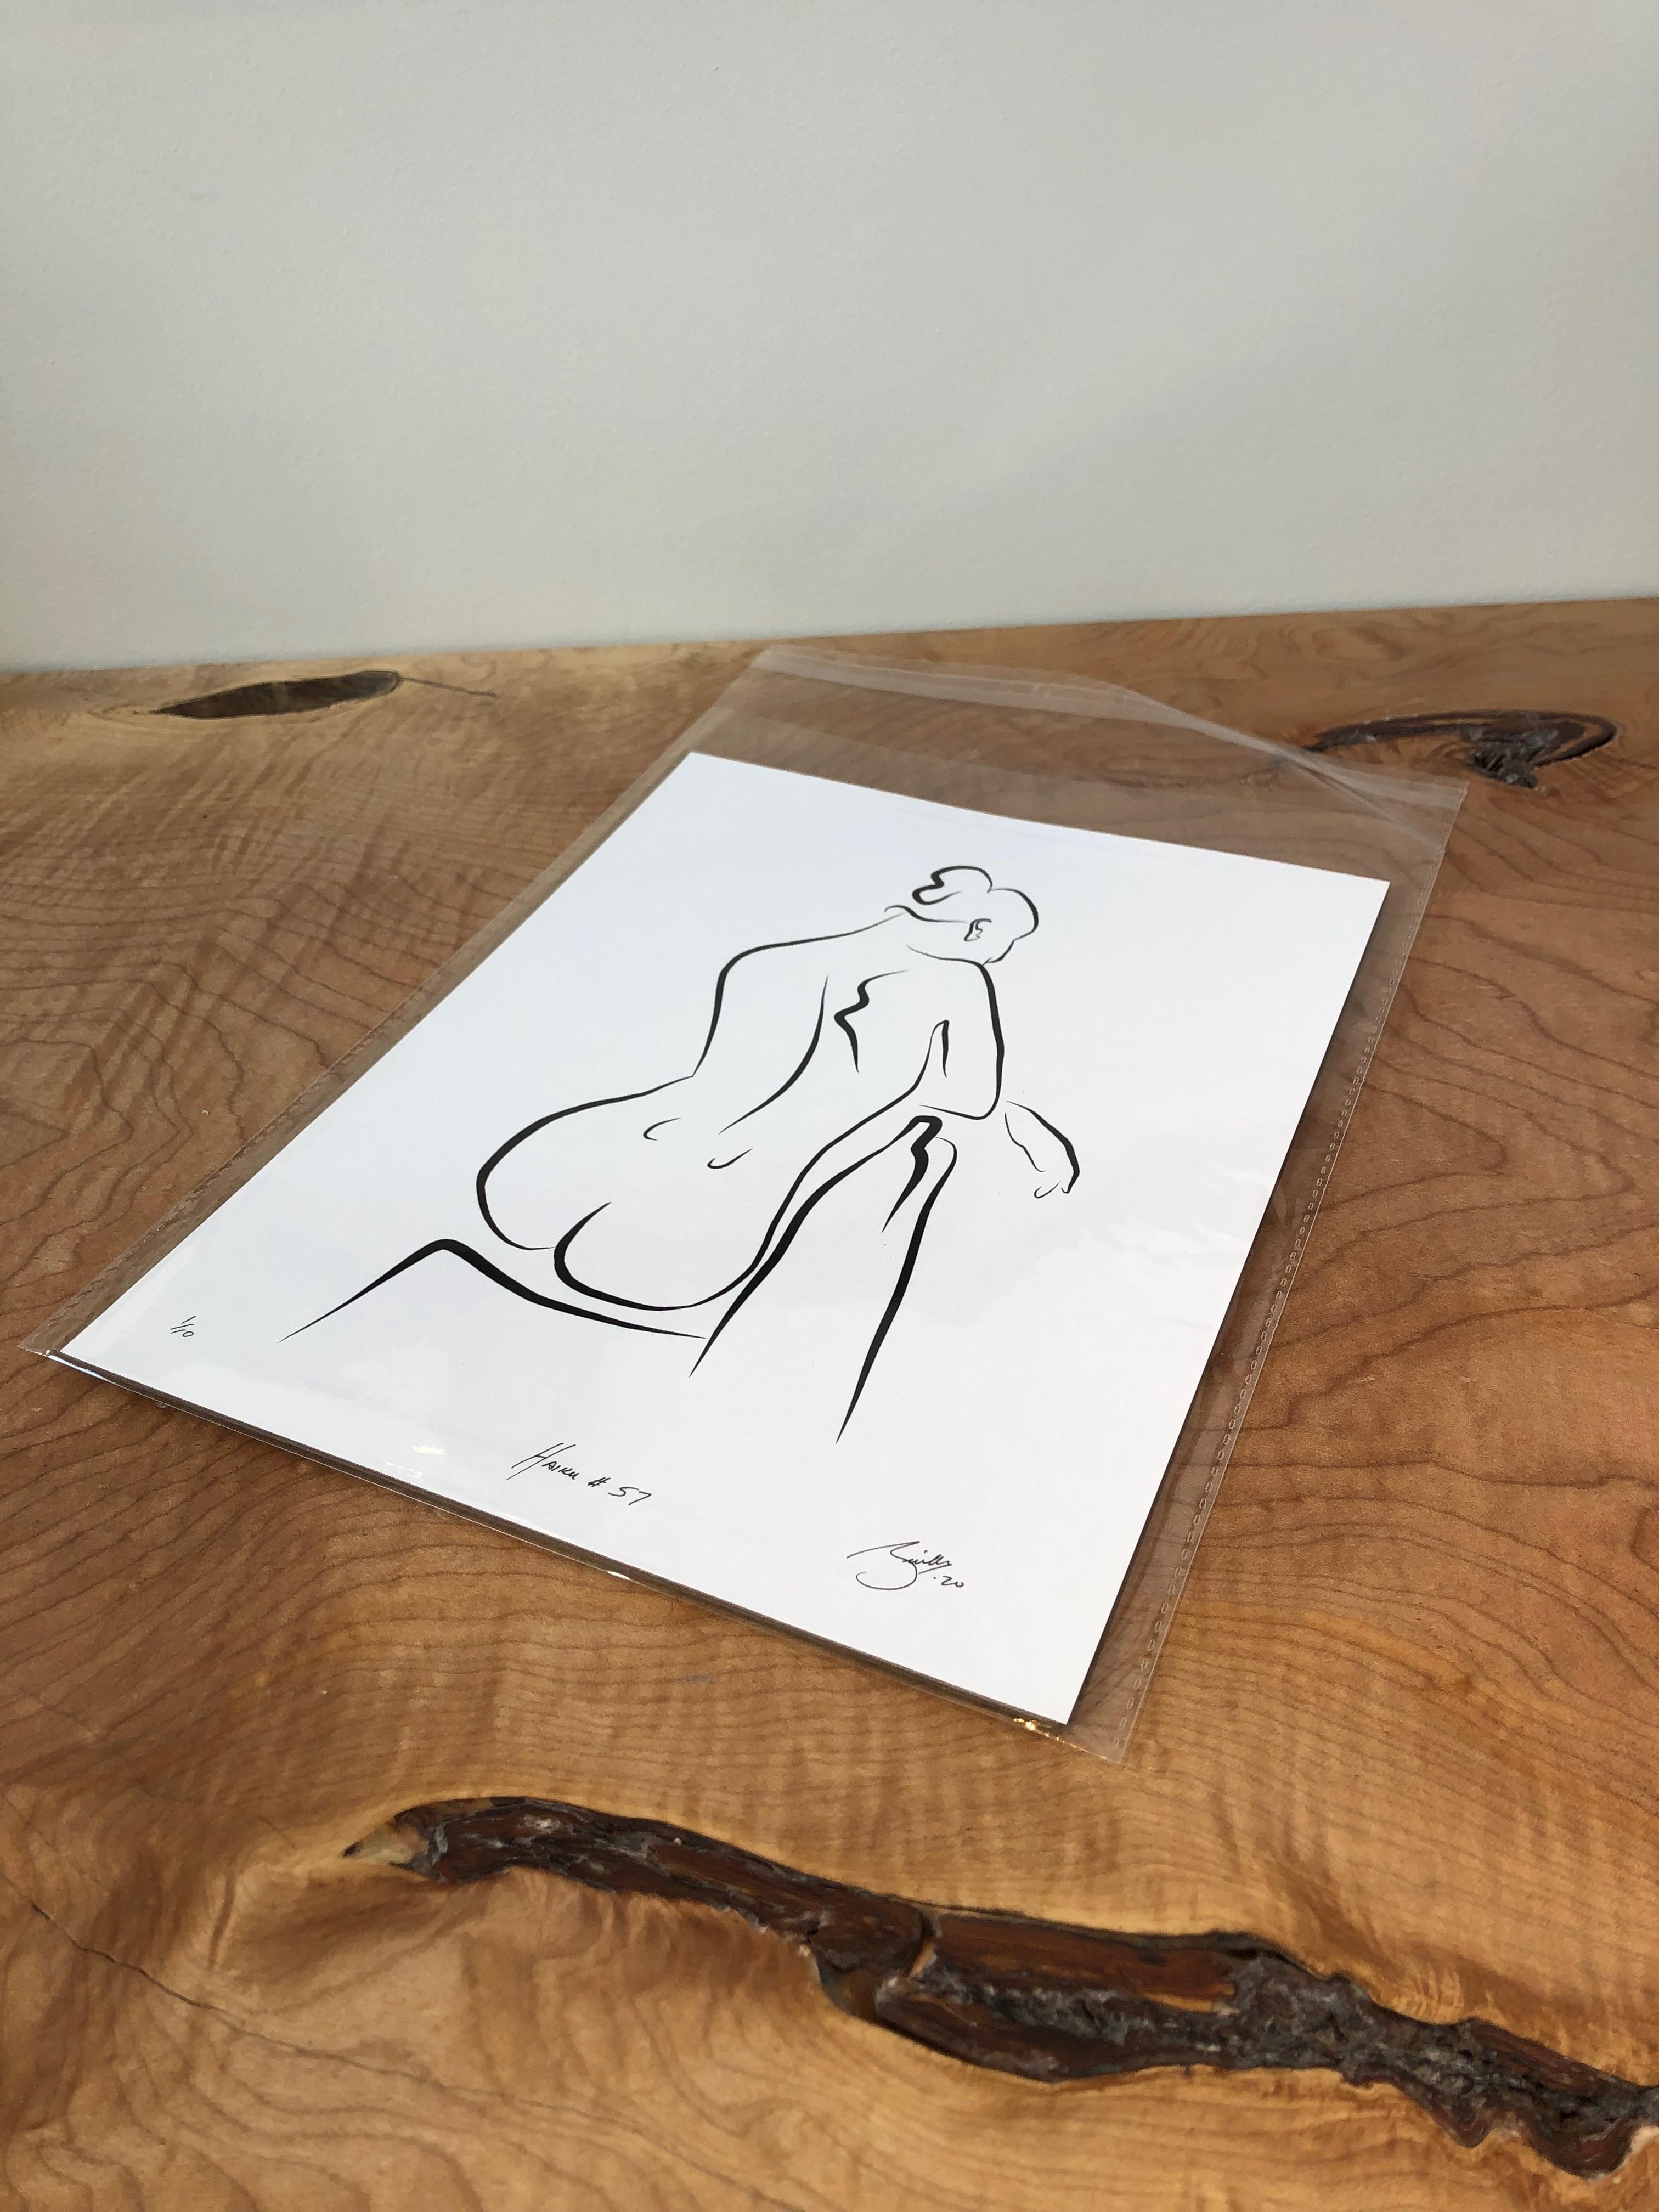 Haiku #57 - Digital Vector Drawing Seated Female Nude From Rear - Print by Michael Binkley